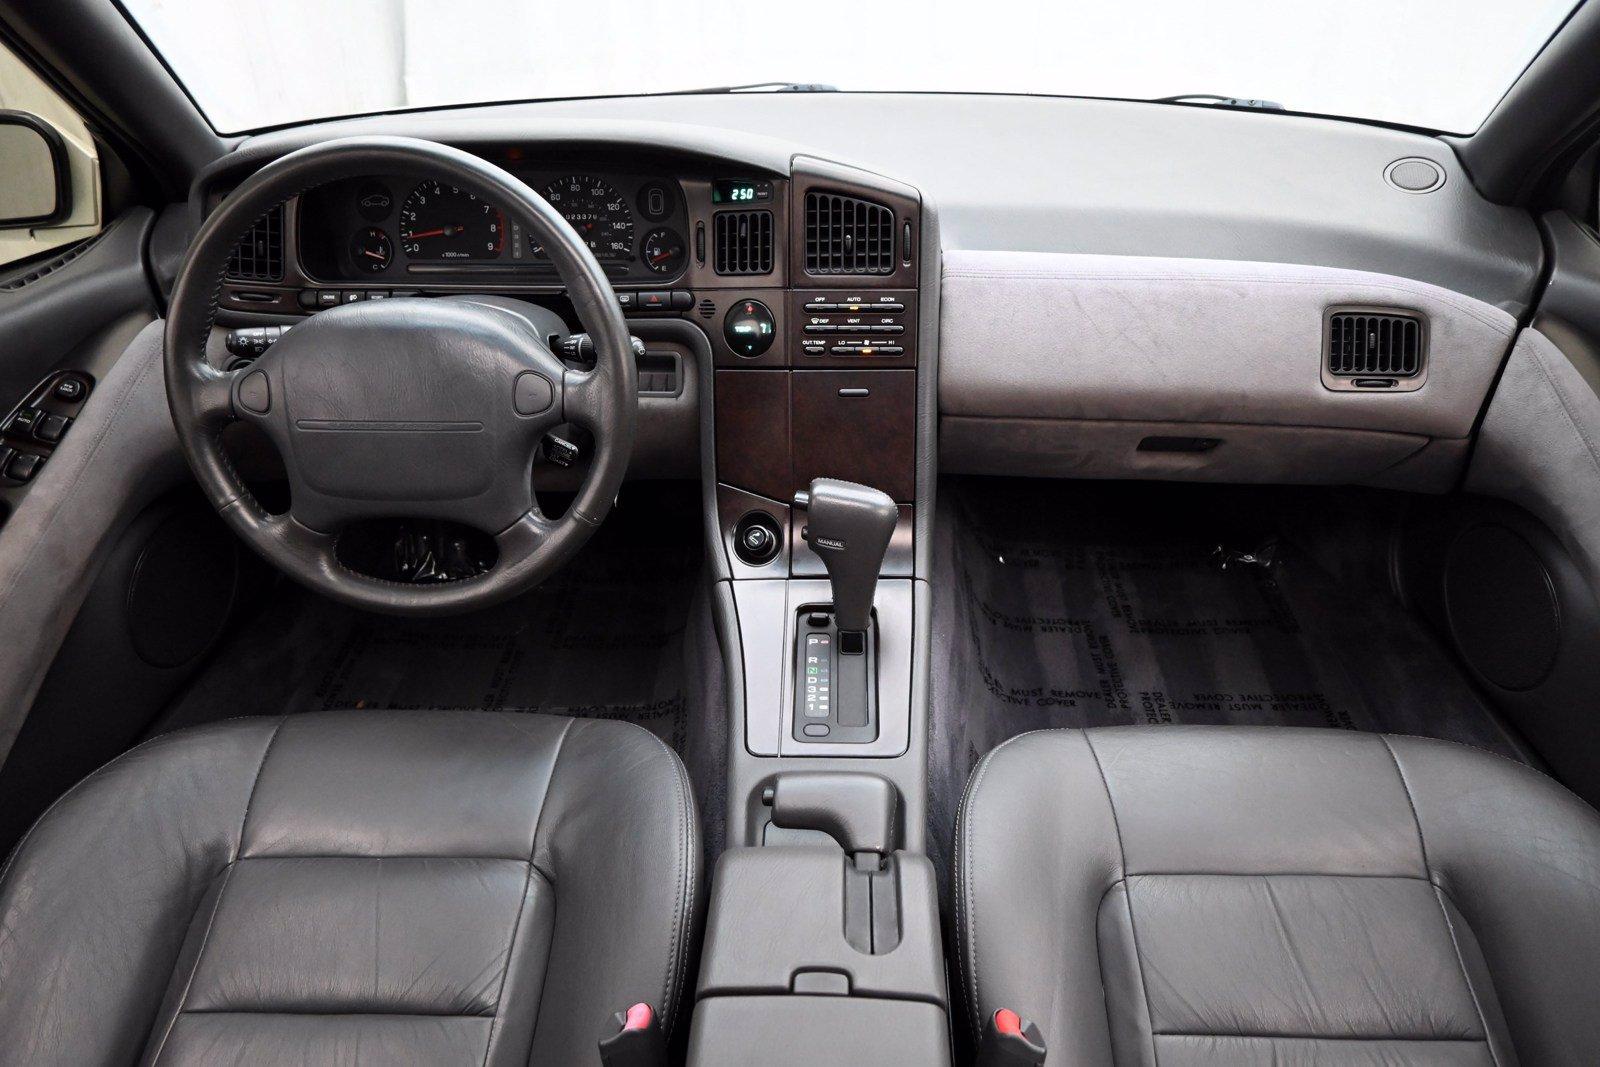 Subaru SVX interior - Cockpit